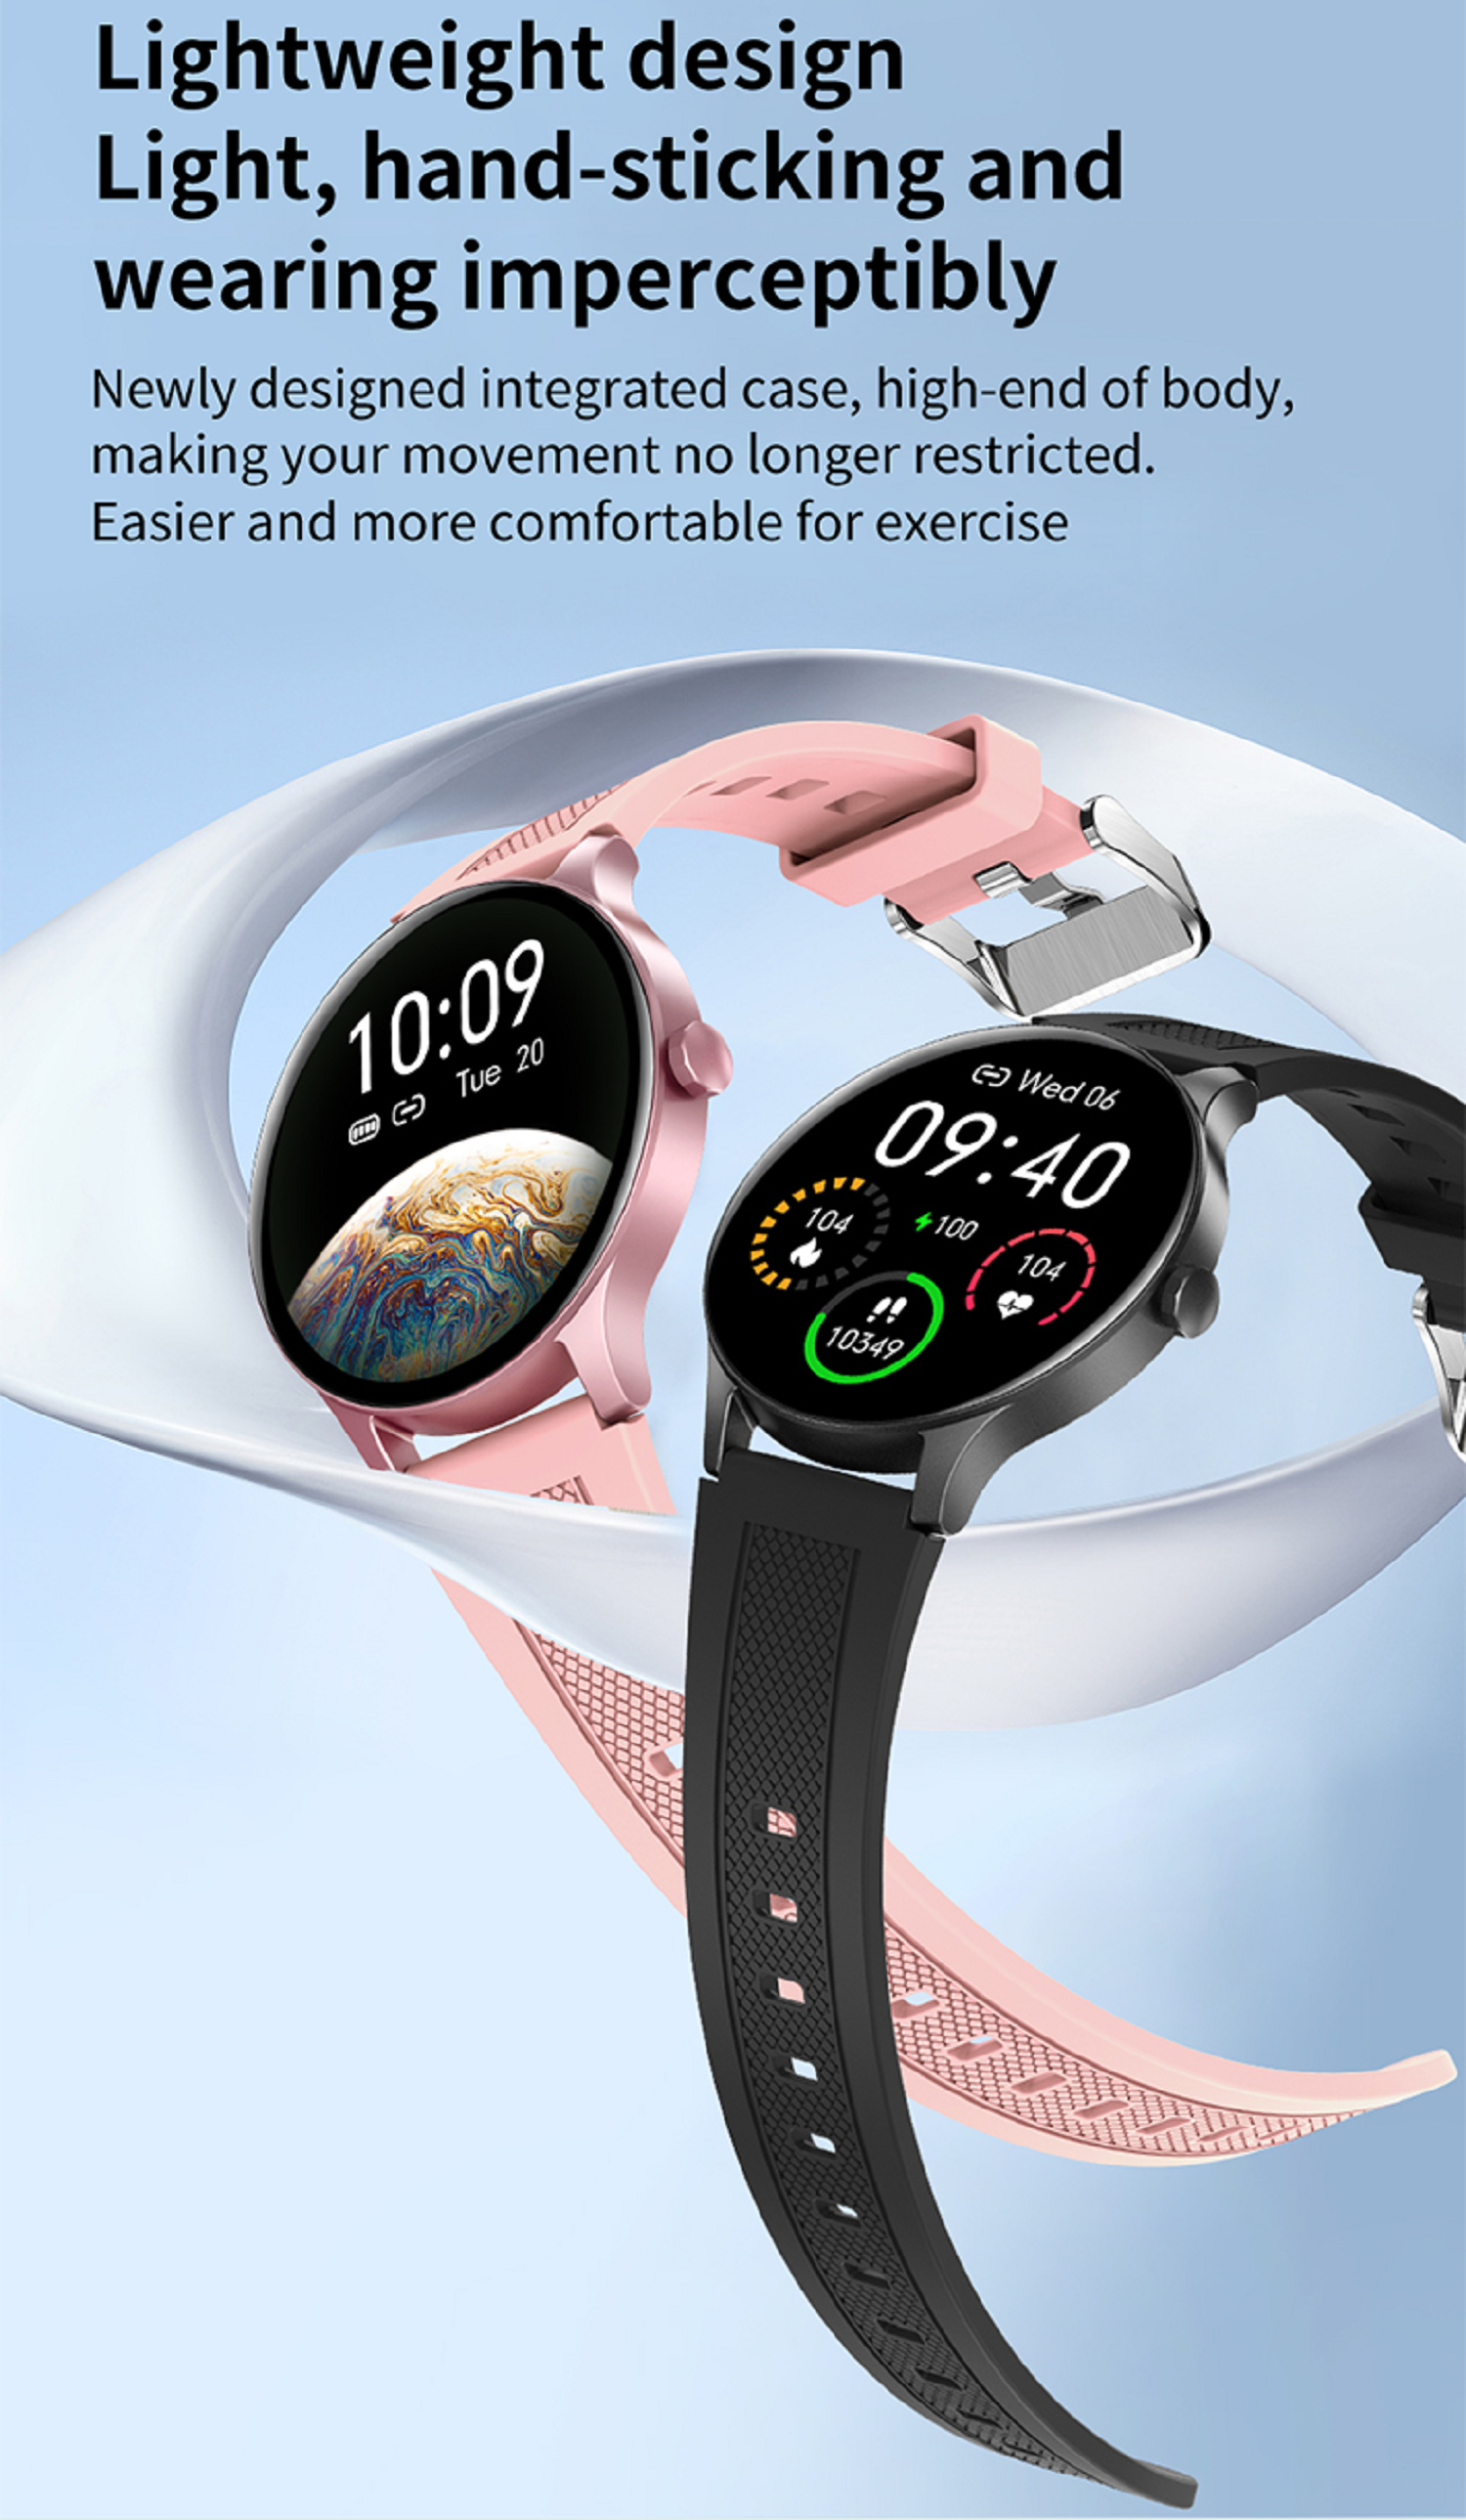 KAREN M NY 20 Smartwatch Schwarz Silikon